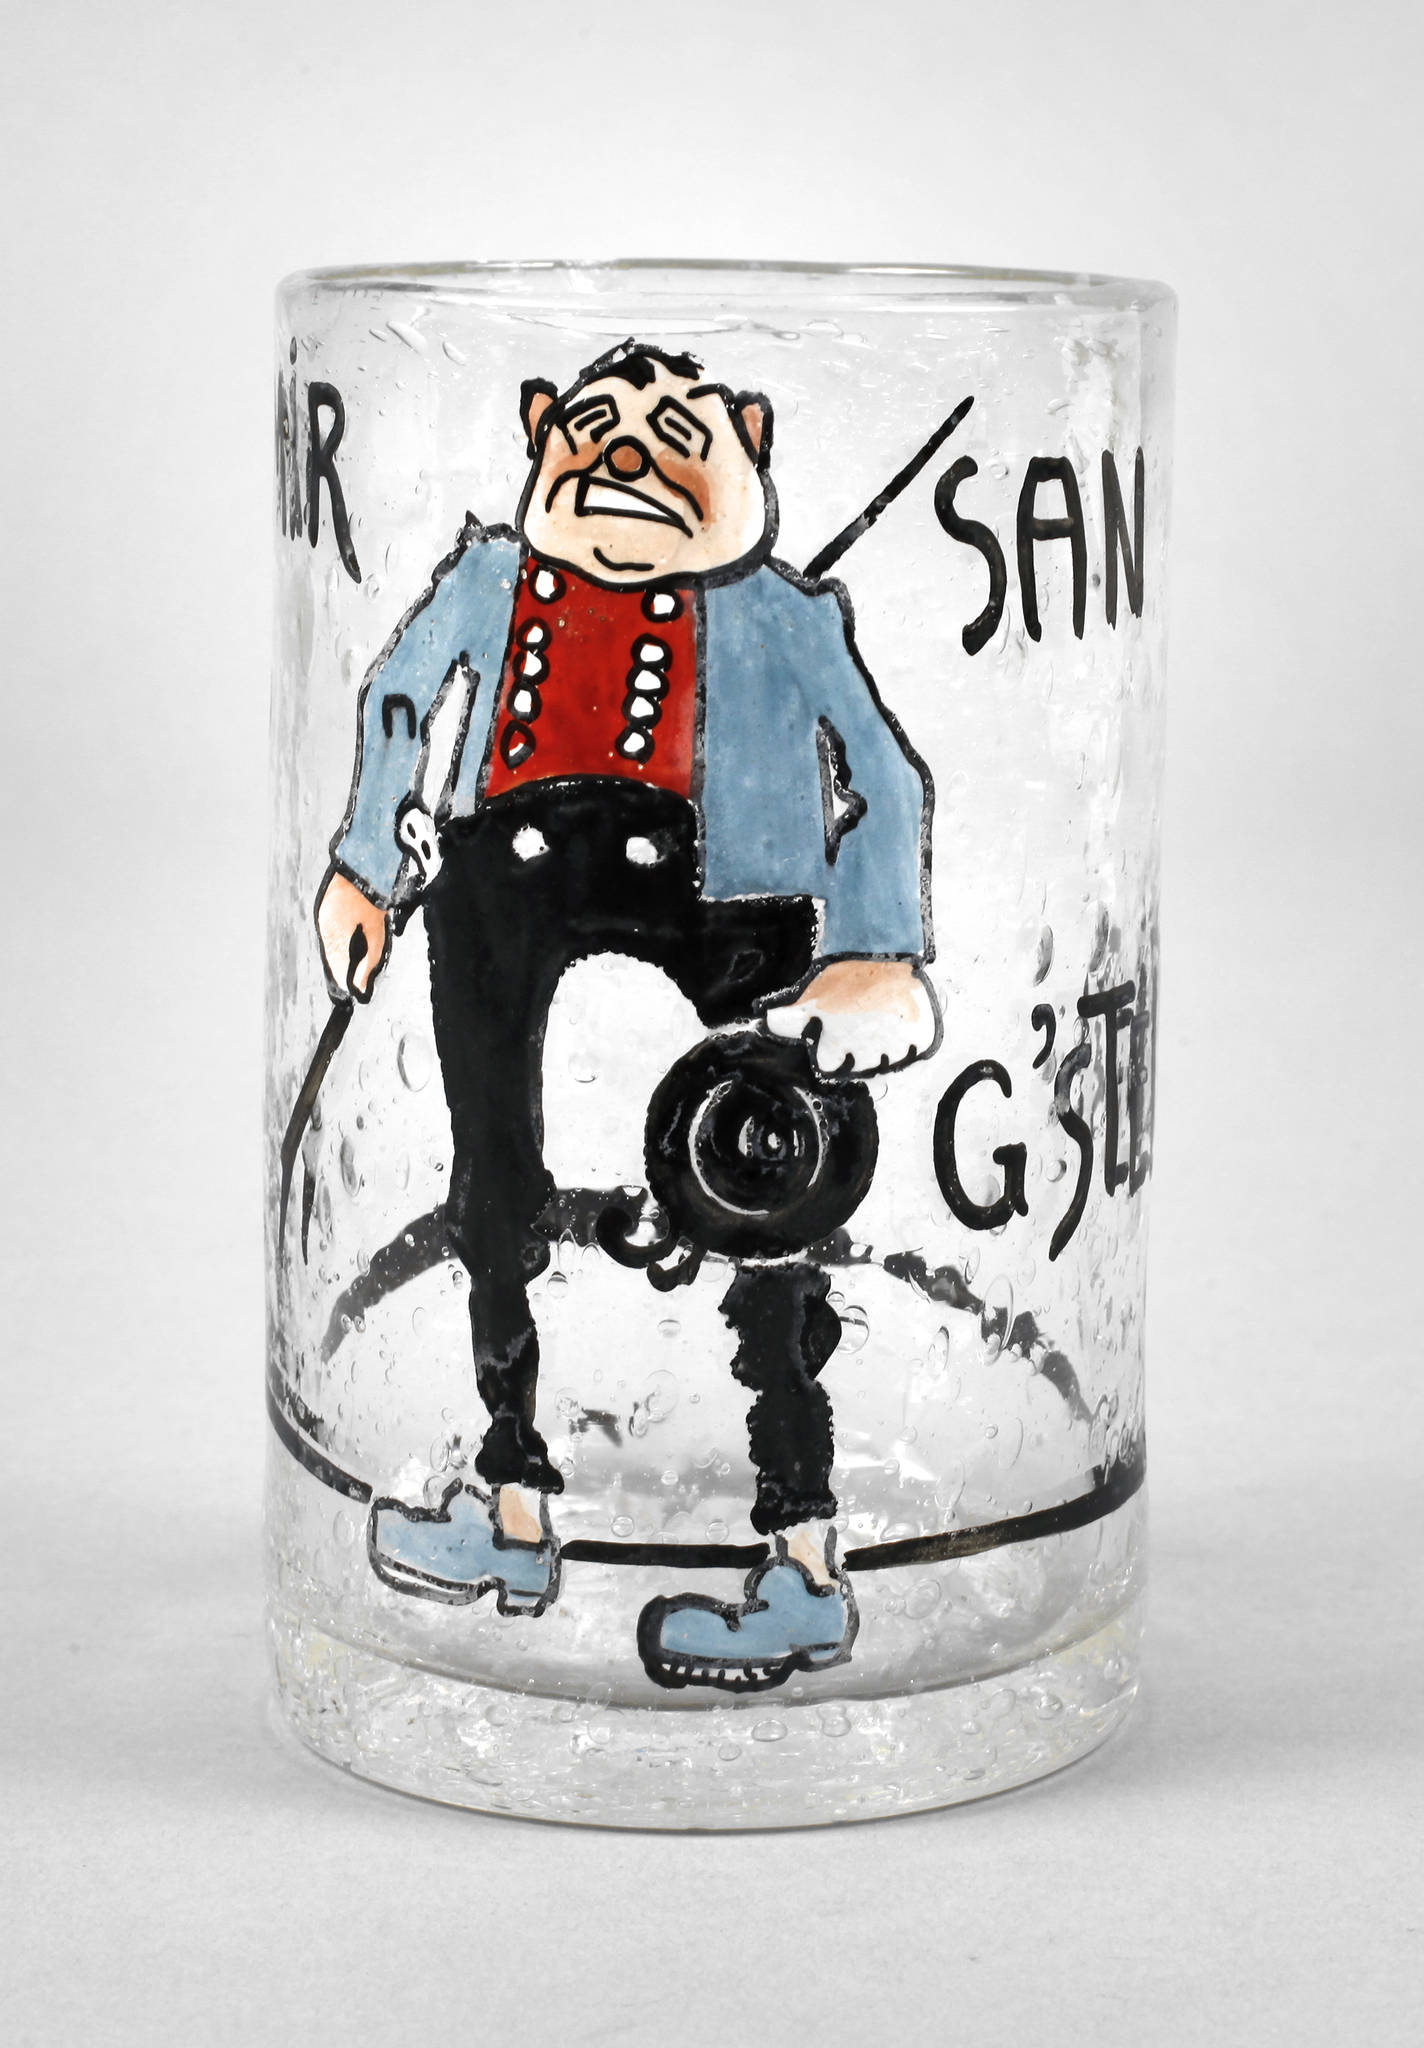 Ludwig Hohlwein Trinkglas ”Mir san g'stellt!”